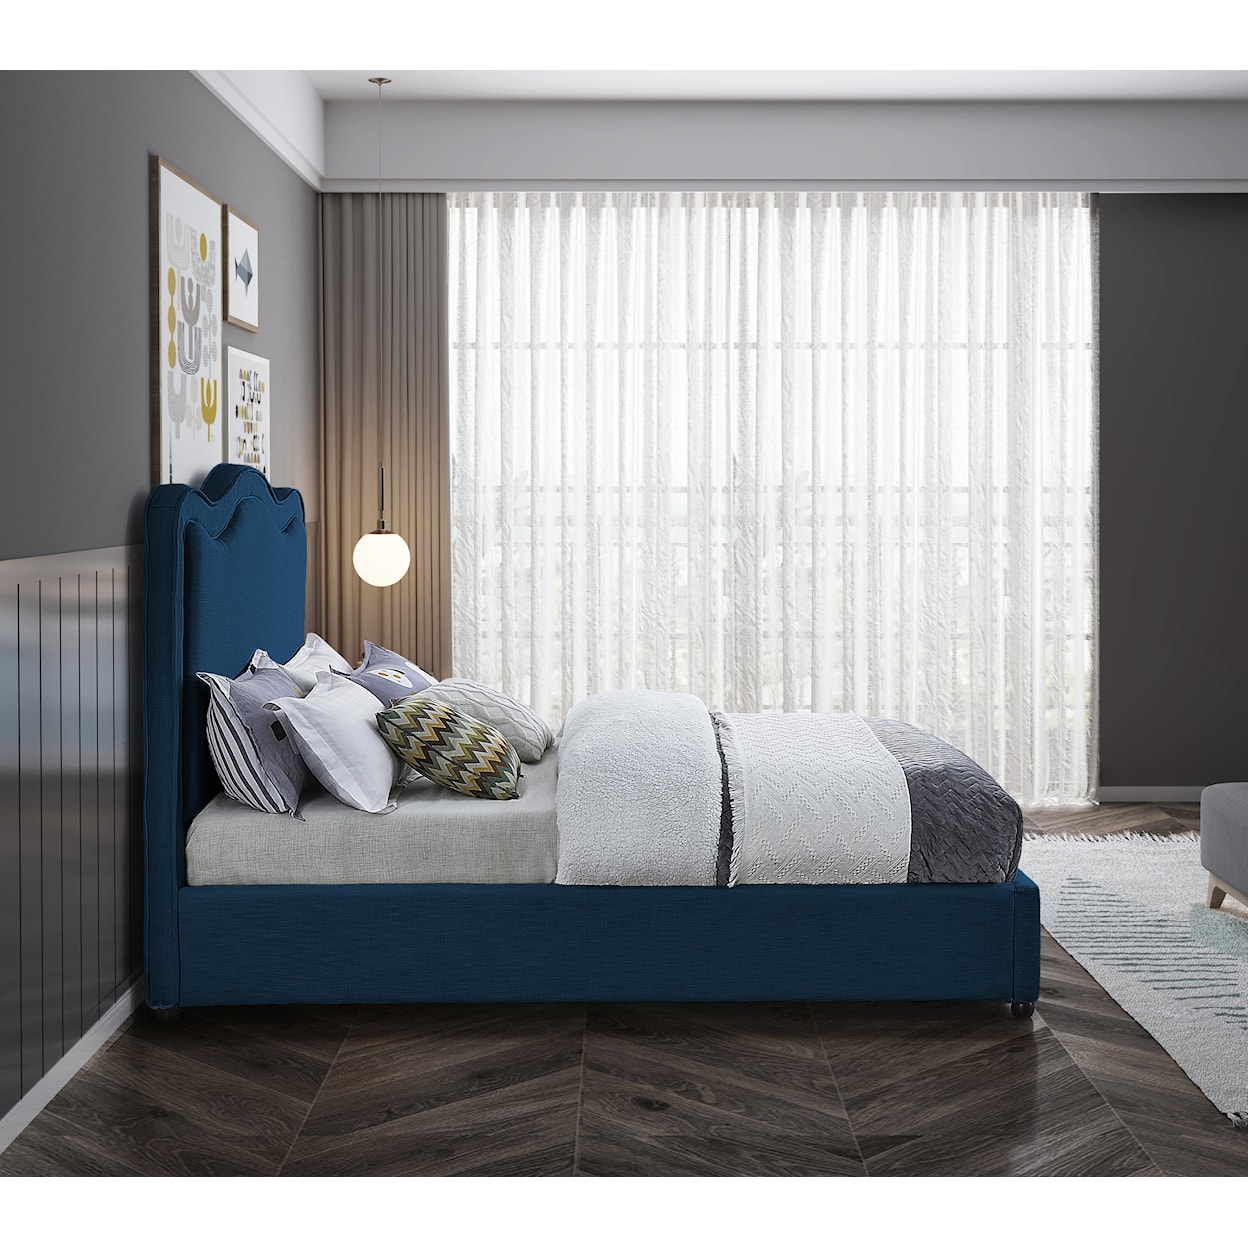 Meridian Furniture Felix Queen Bed